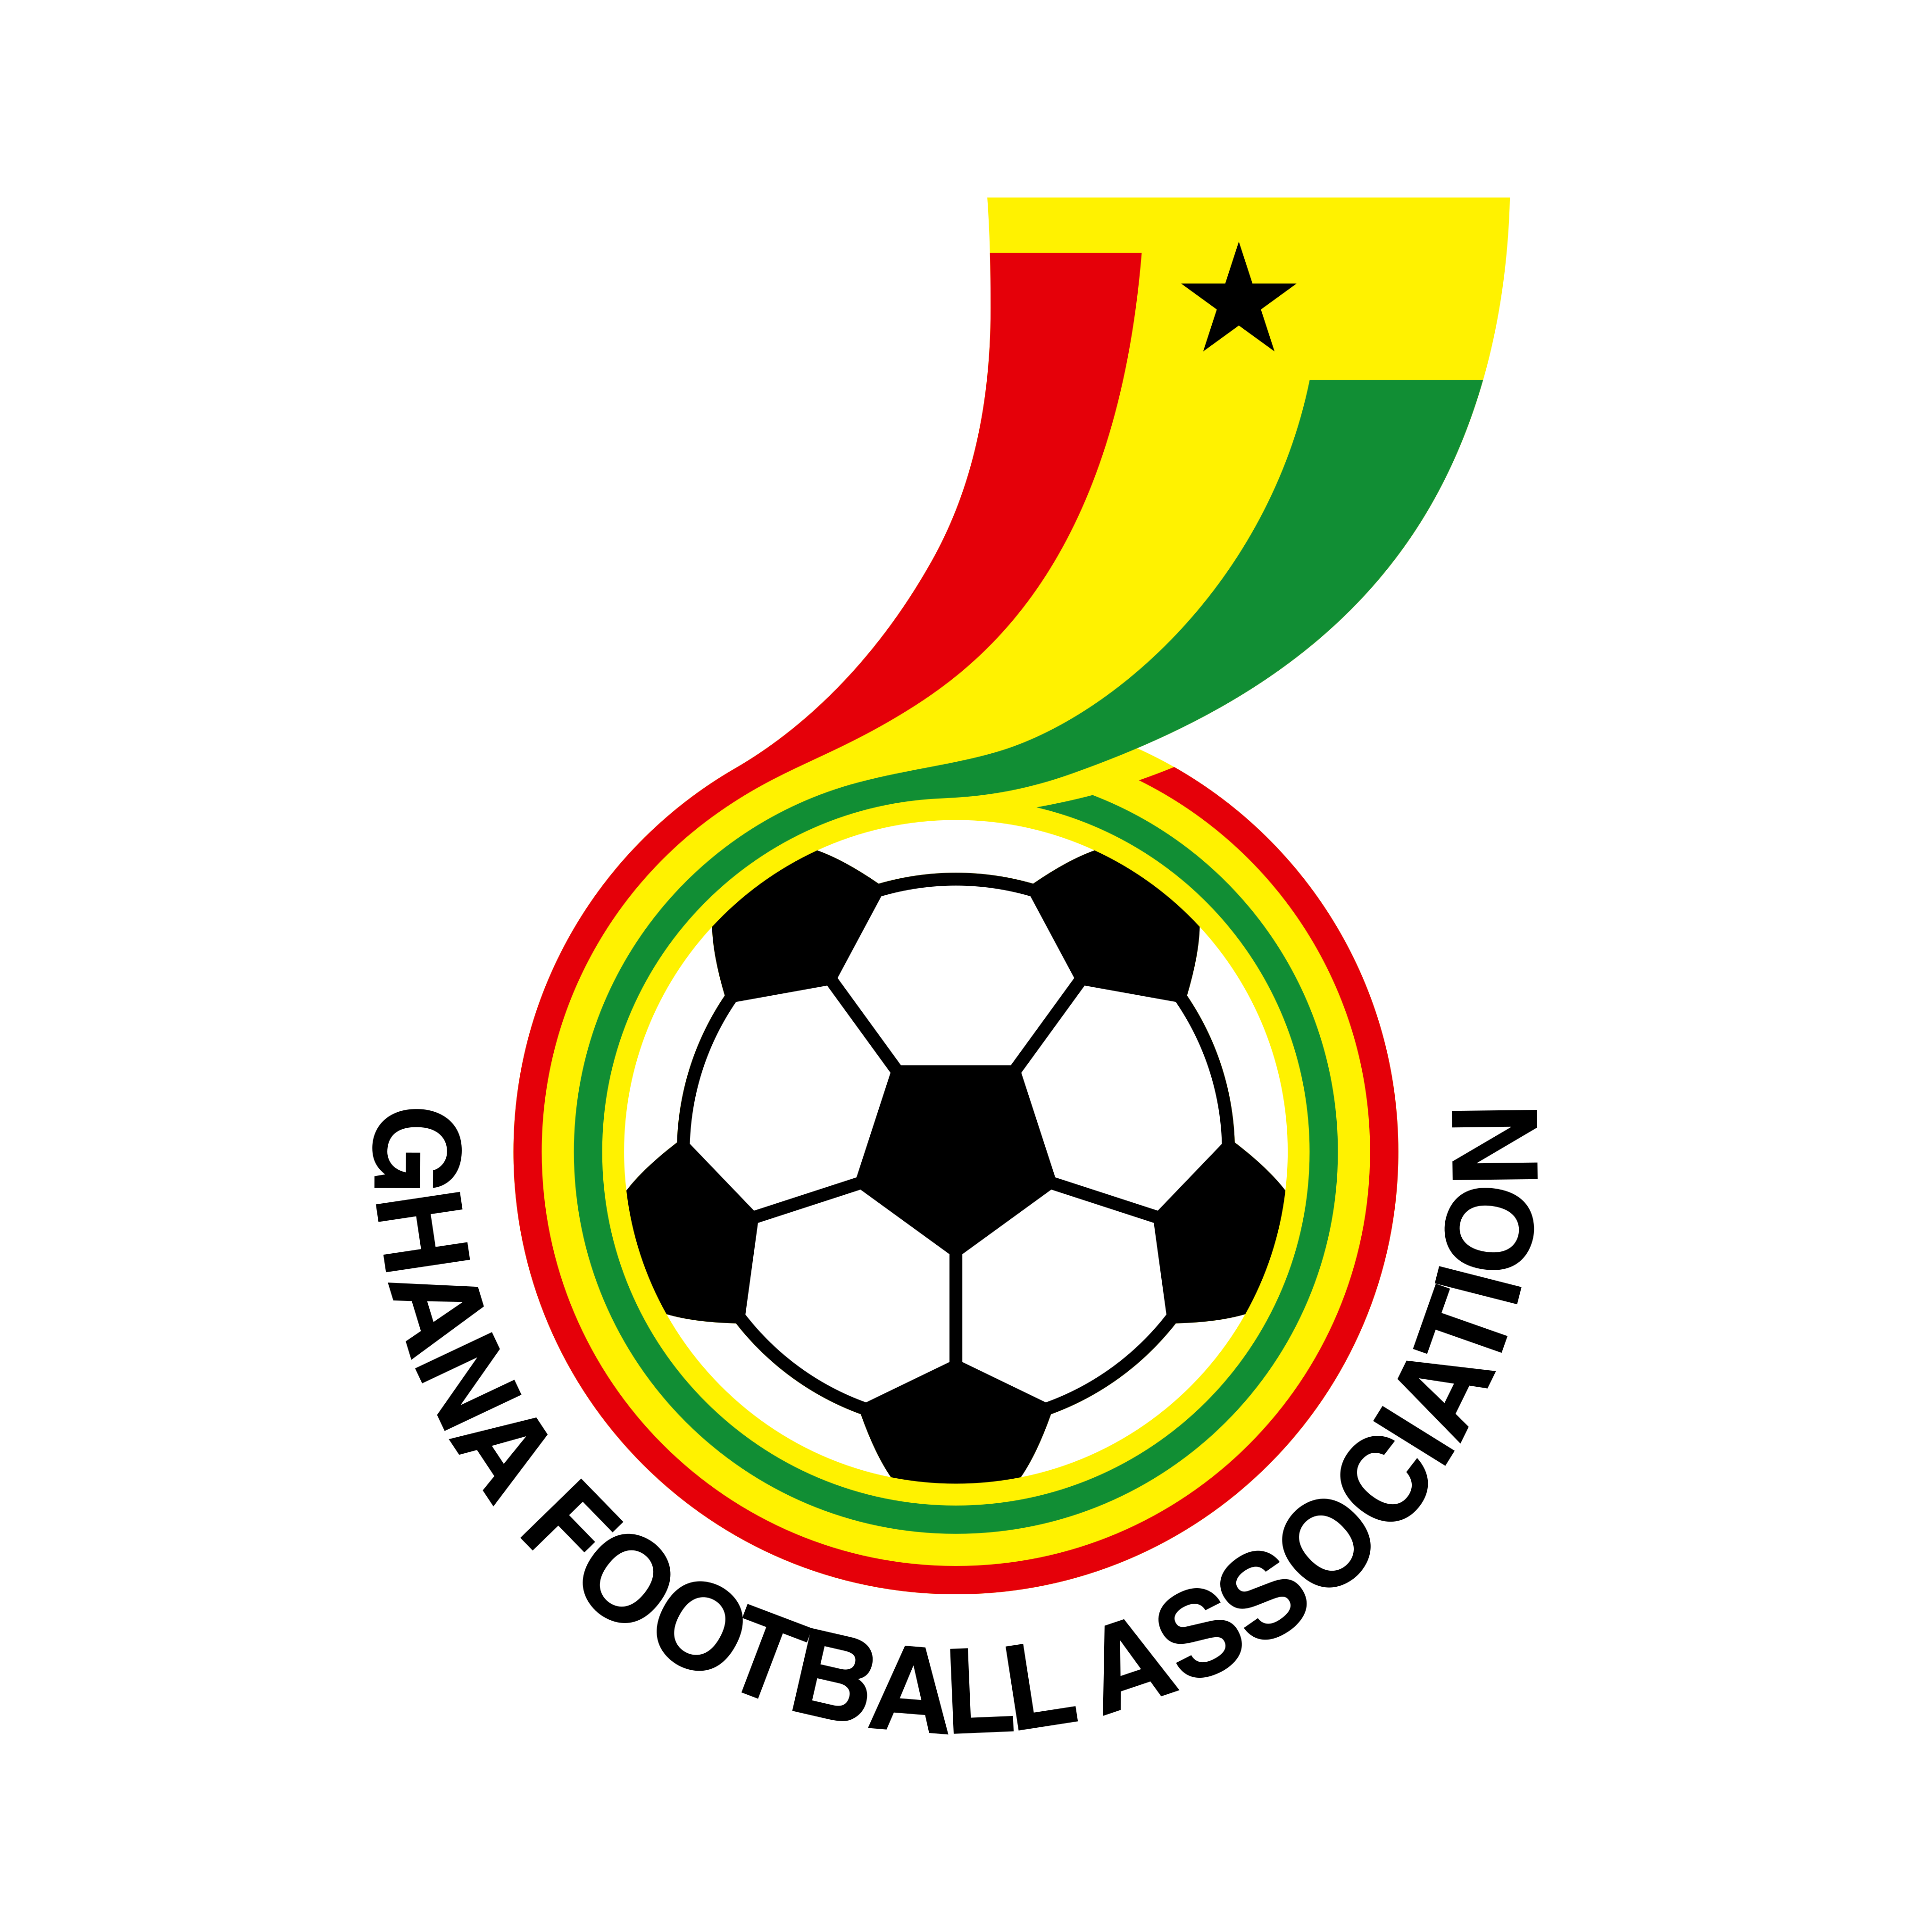 ghana national football team logo 0 - Ghana National Football Team Logo